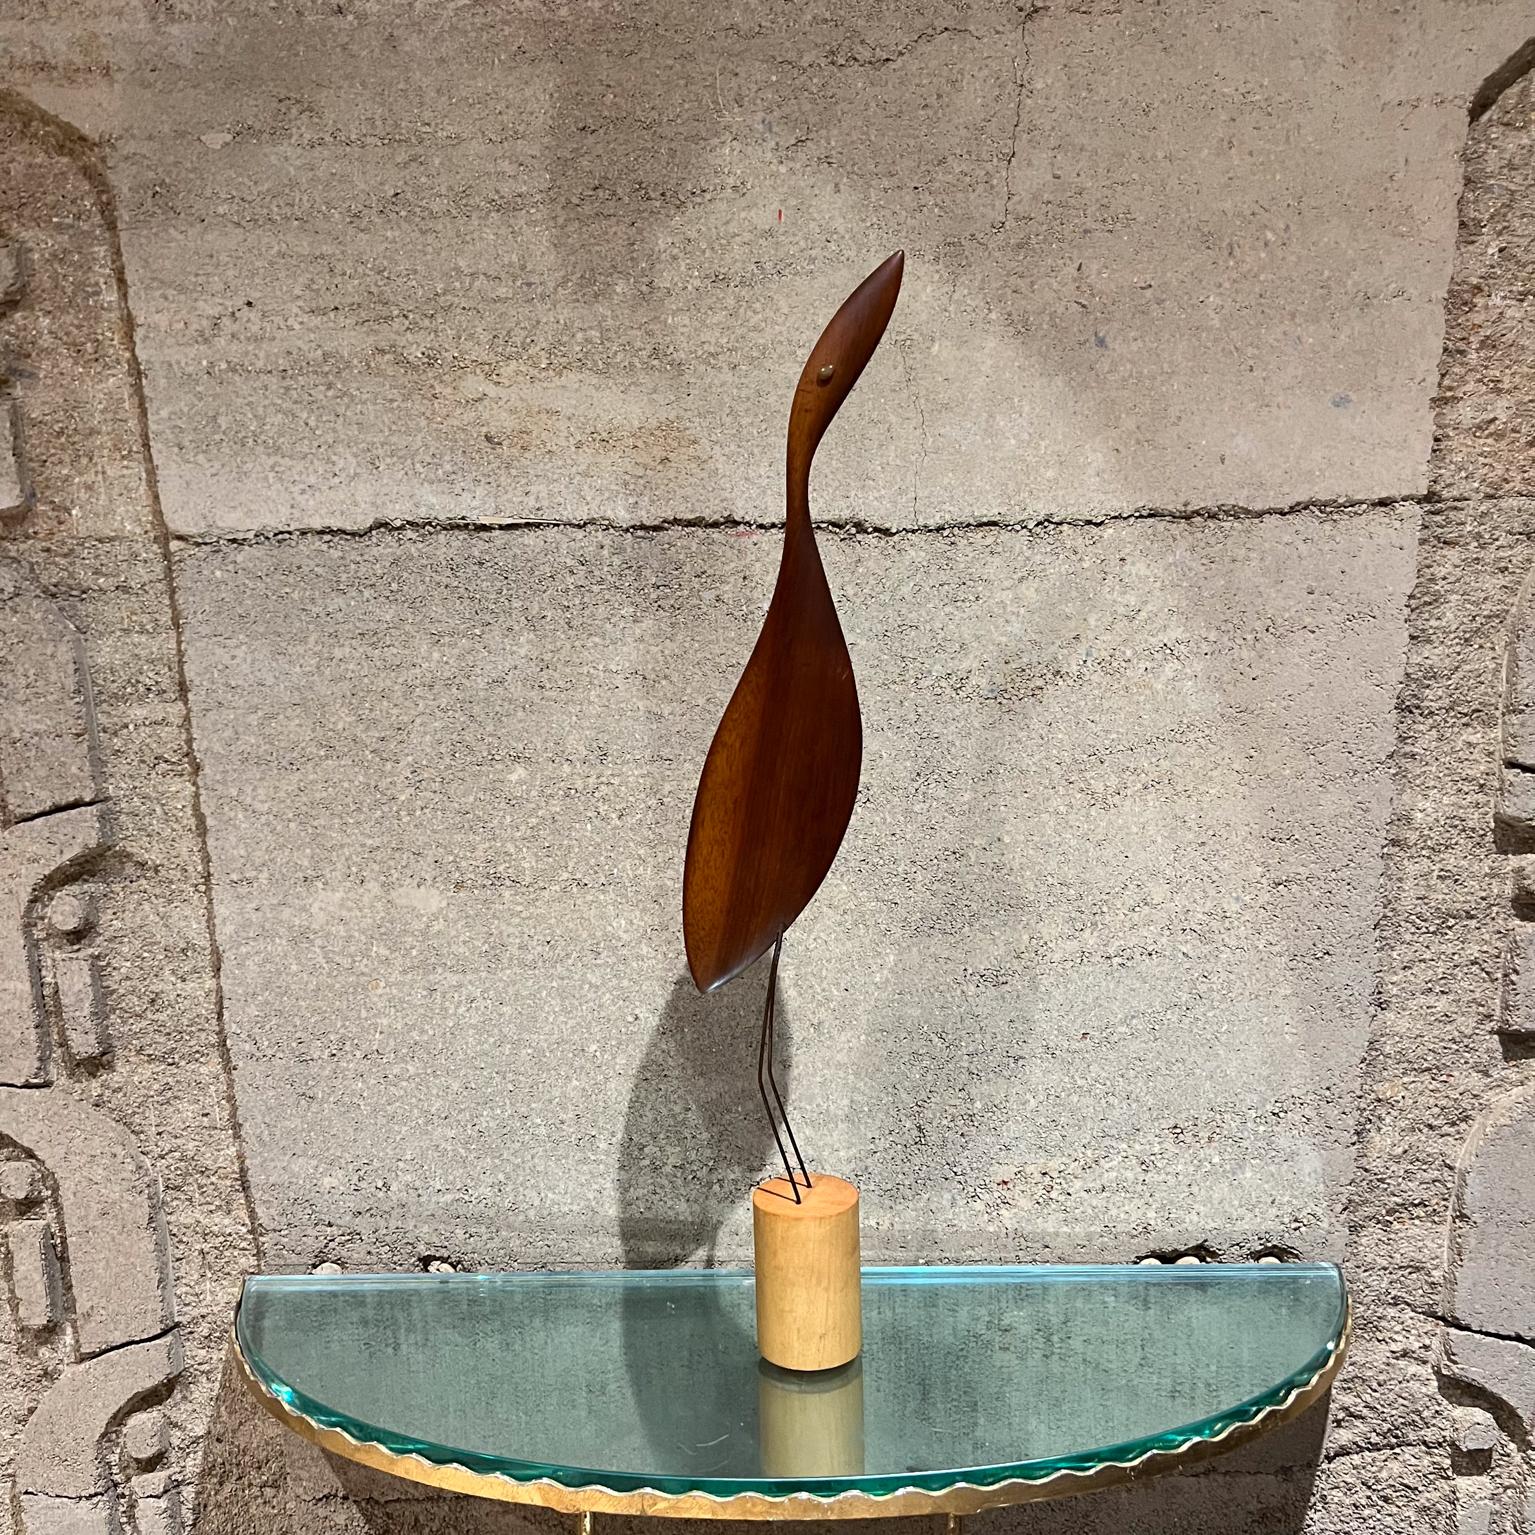 1960s Modern Wood Bird Egret Table Sculpture signed K & P
Artistics estampillé
25 h x 7 p x 2,5 w
Vintage d'occasion non restauré
Voir les images fournies.





